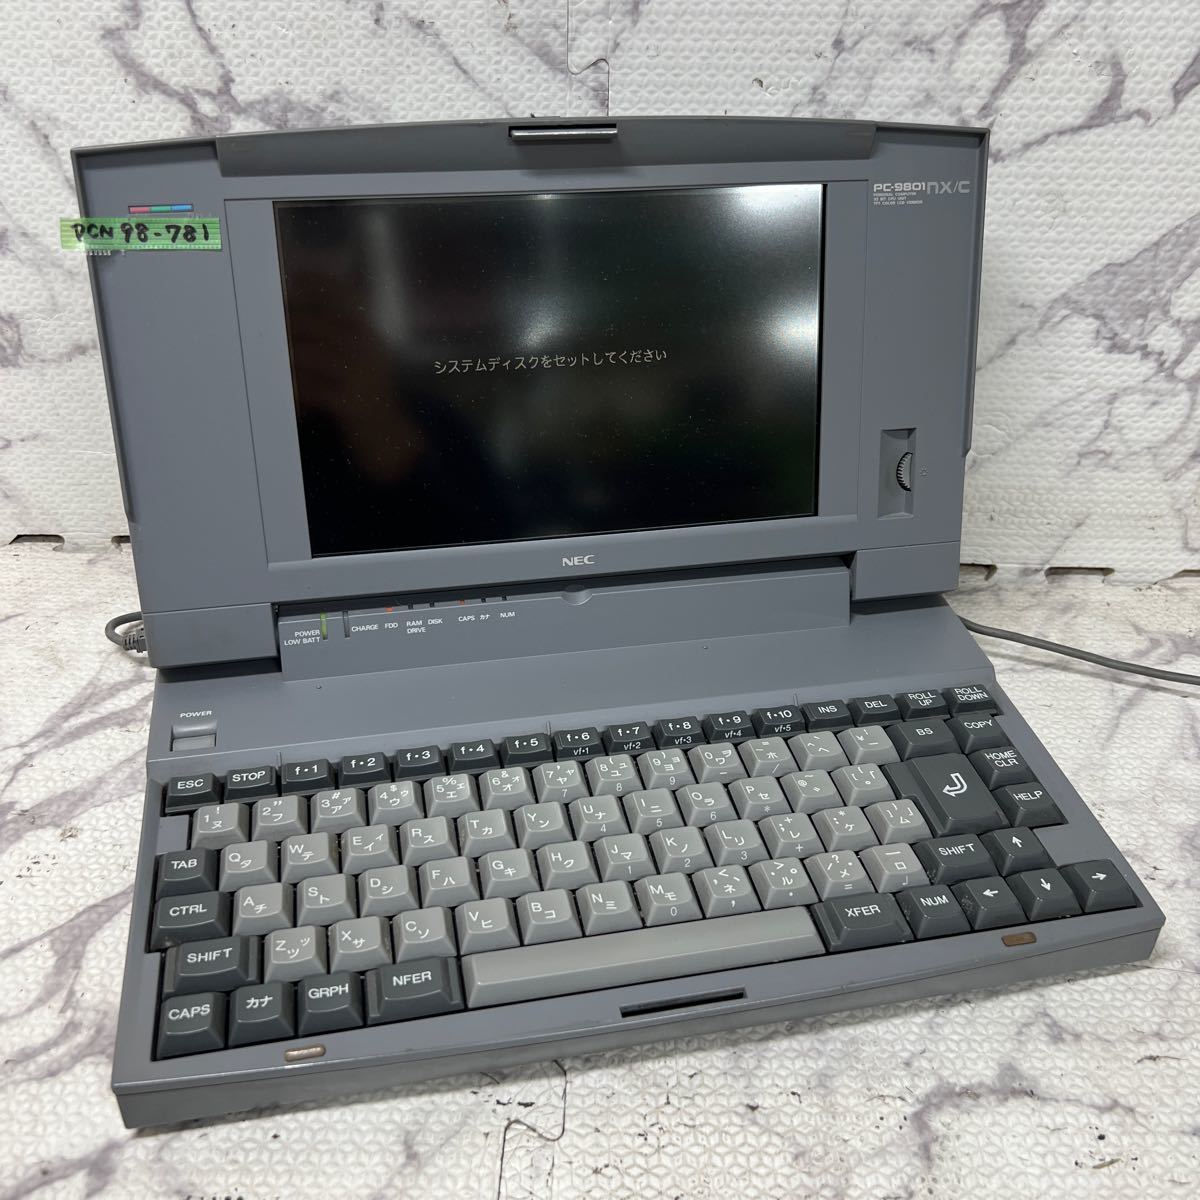 PCN98-781 激安 PC98 ノートブック NEC PC-9801NX/C 起動確認済み ジャンク_画像1